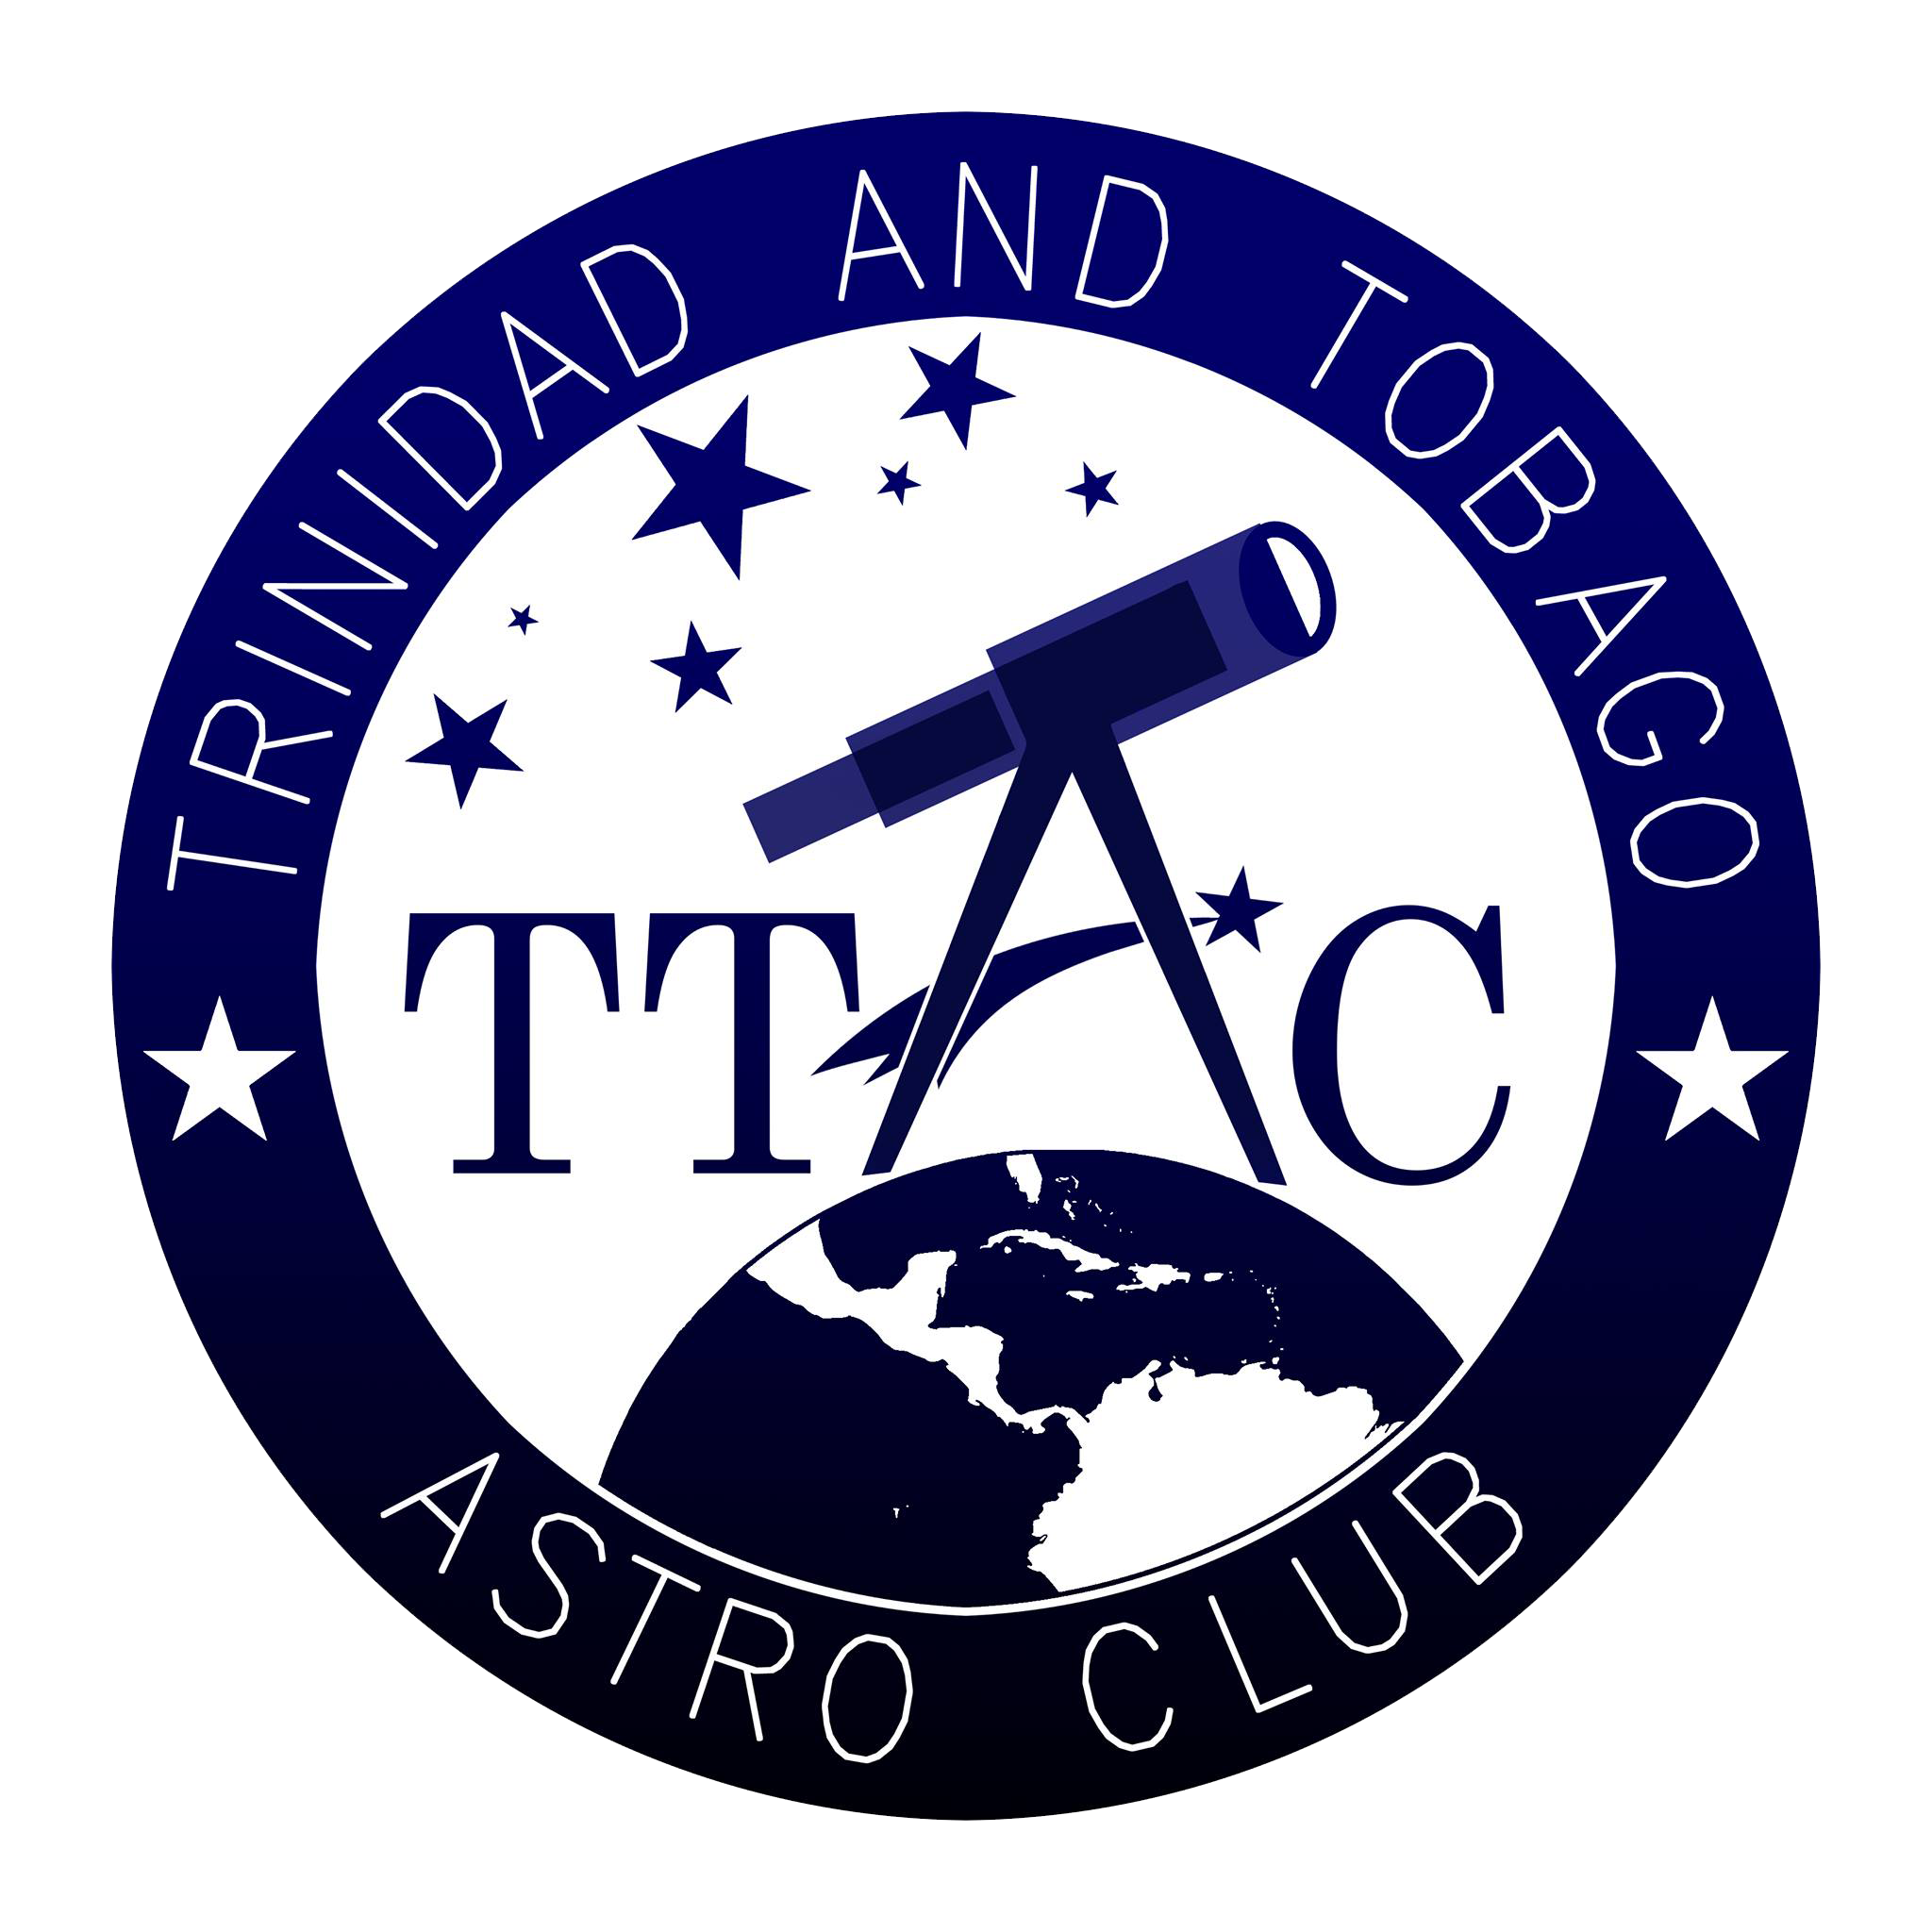 TTAC AstroClub